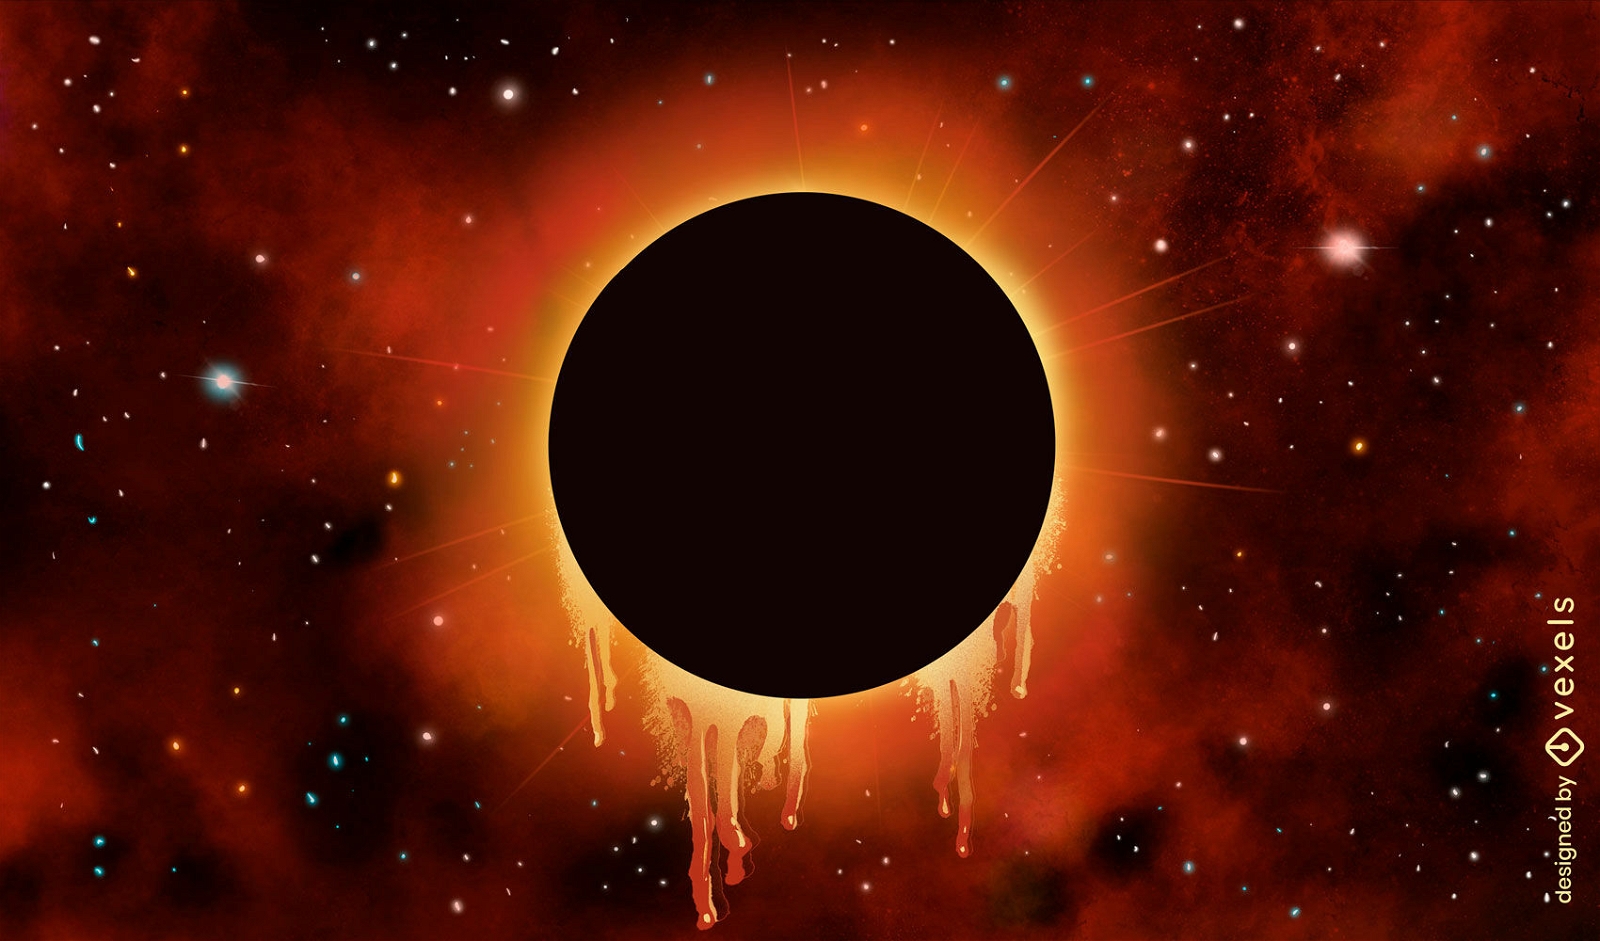 Eclipse solar en el fondo de la ilustraci?n del espacio